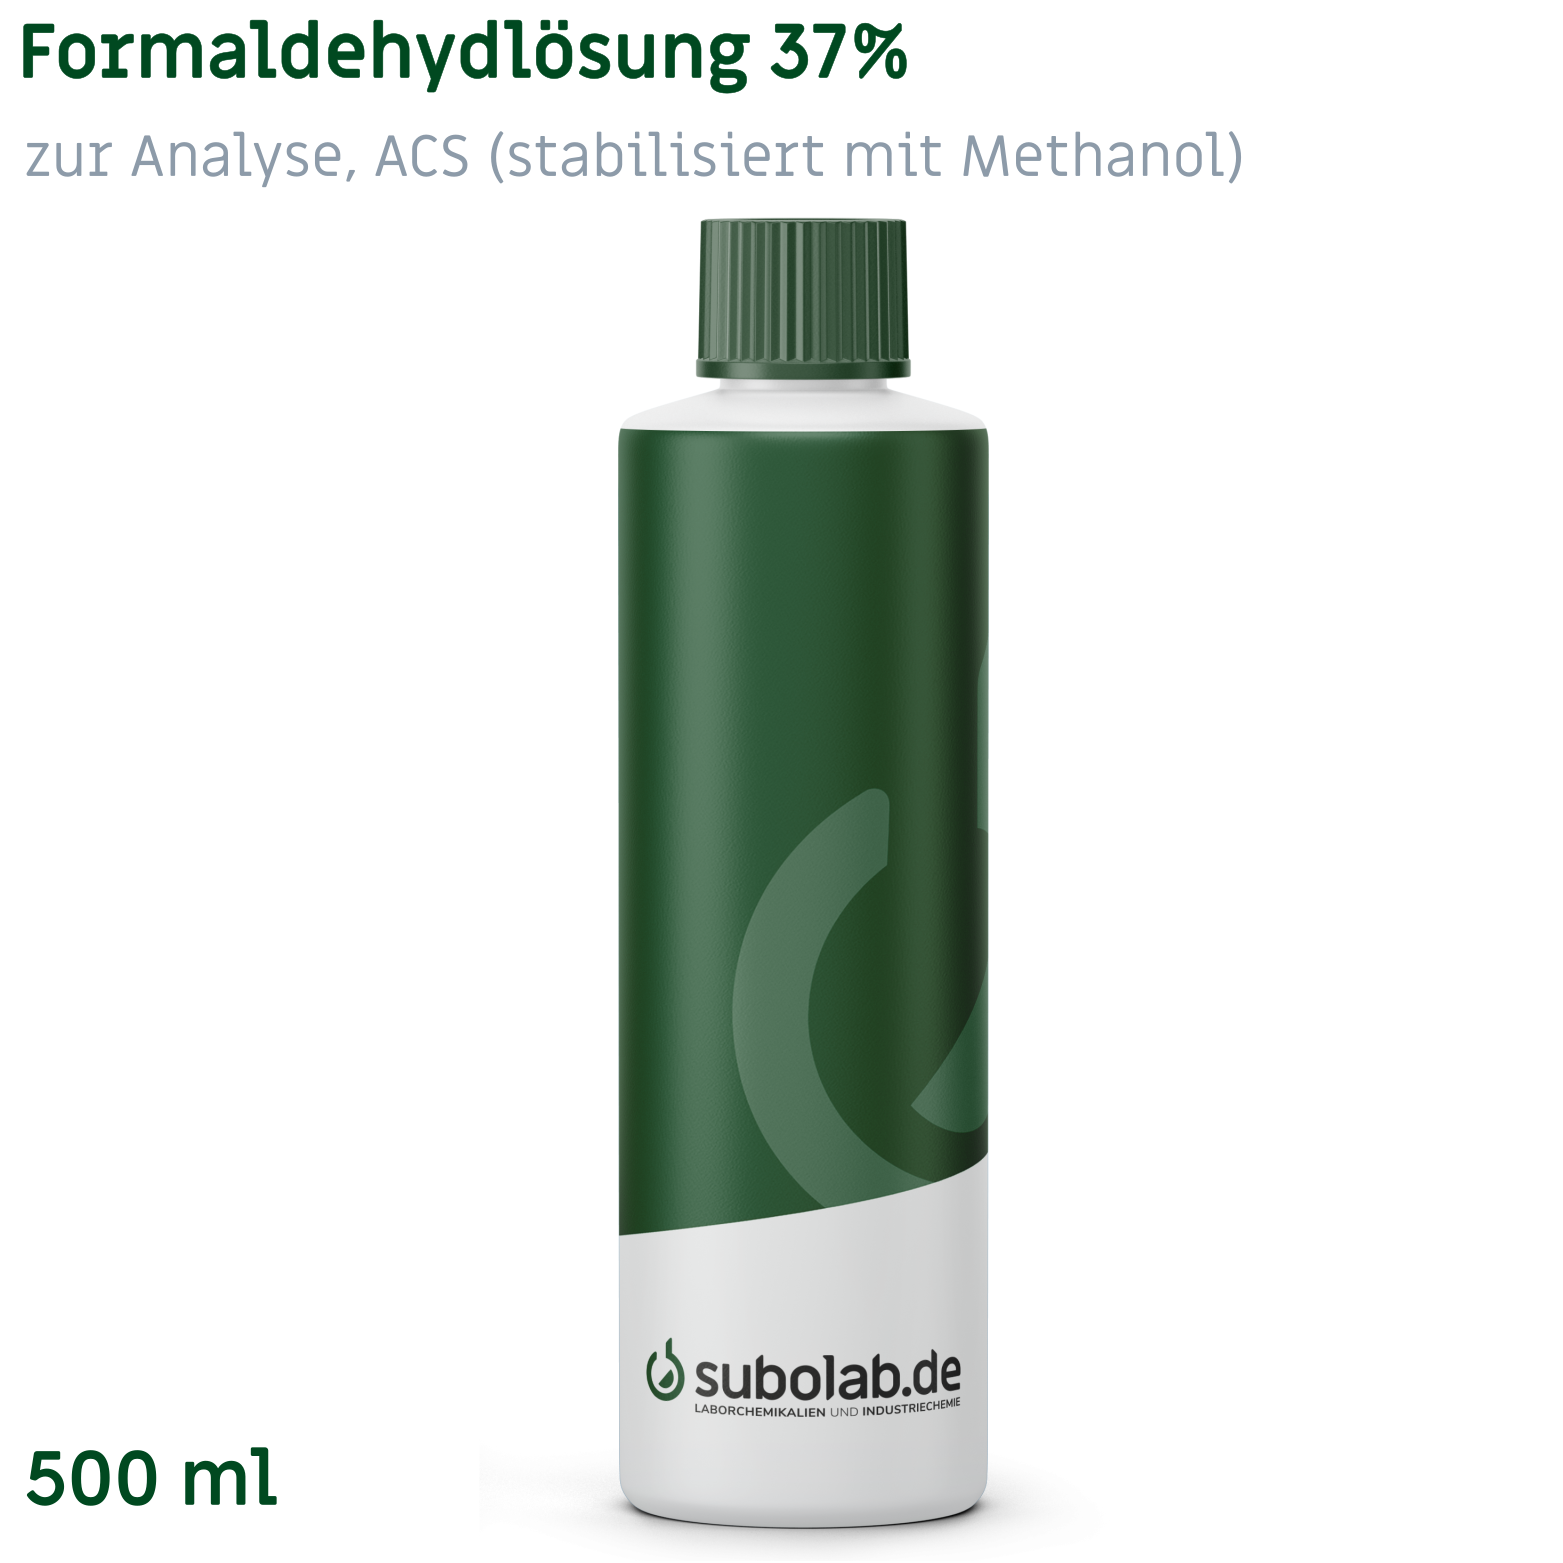 Bild von Formaldehydlösung 37% zur Analyse, ACS (stabilisiert mit Methanol) (500 ml)